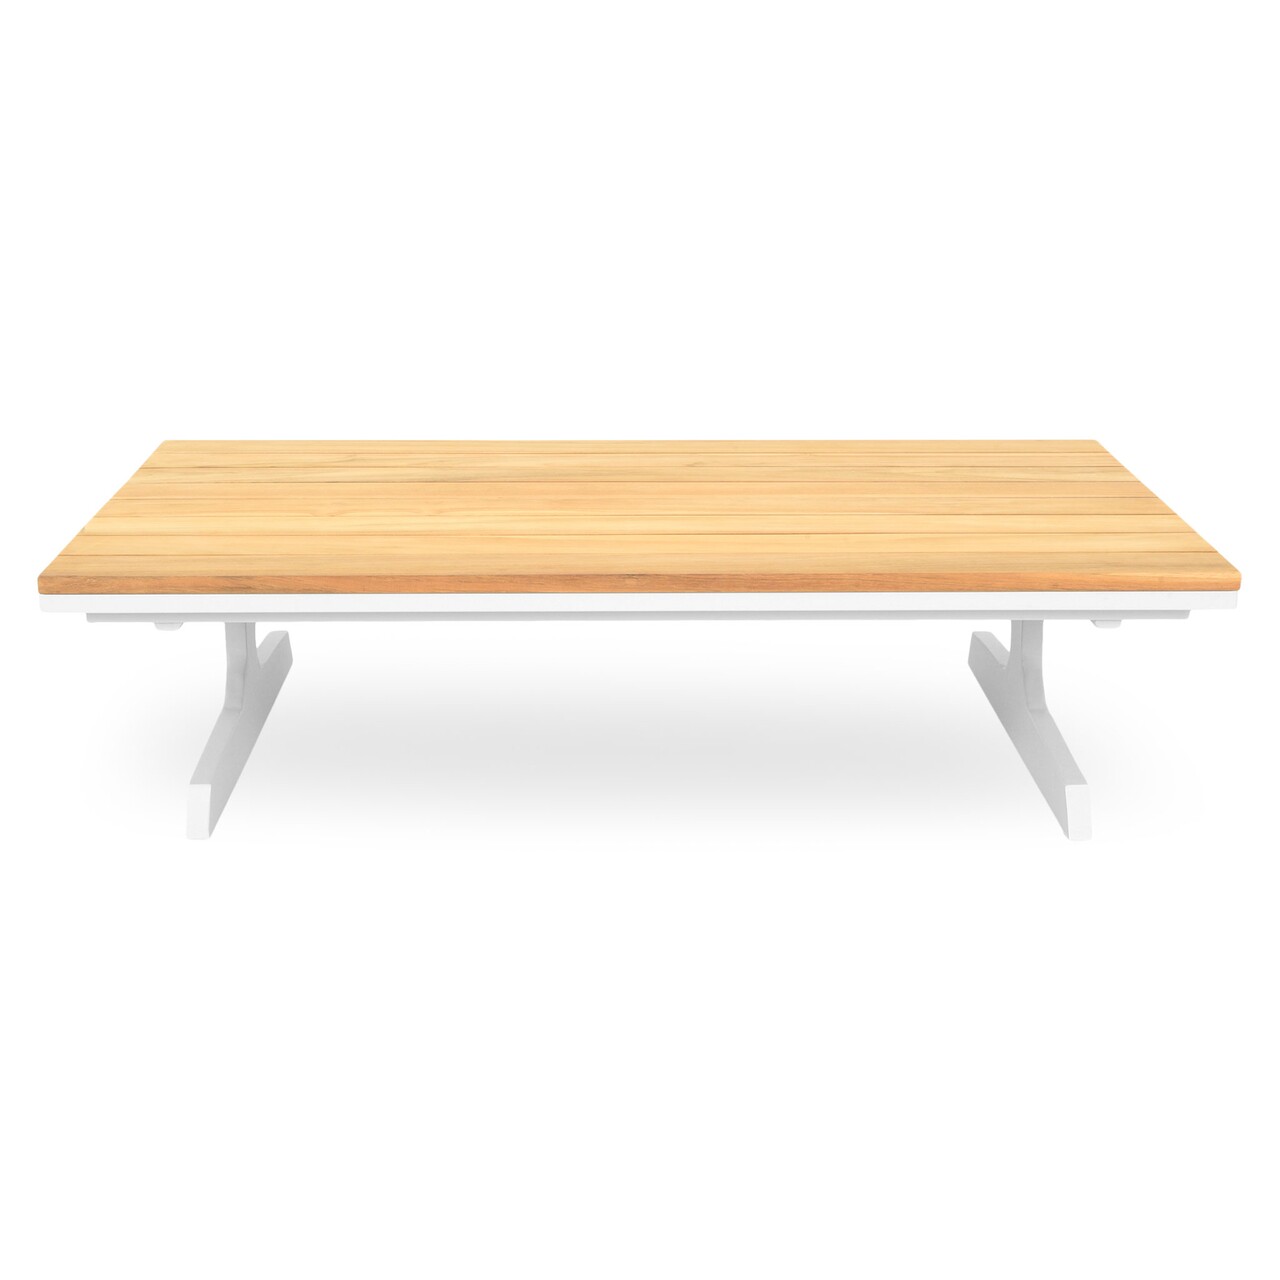 Maison play asztalka, l.120 l.75 h.30 cm, alumínium, természetes